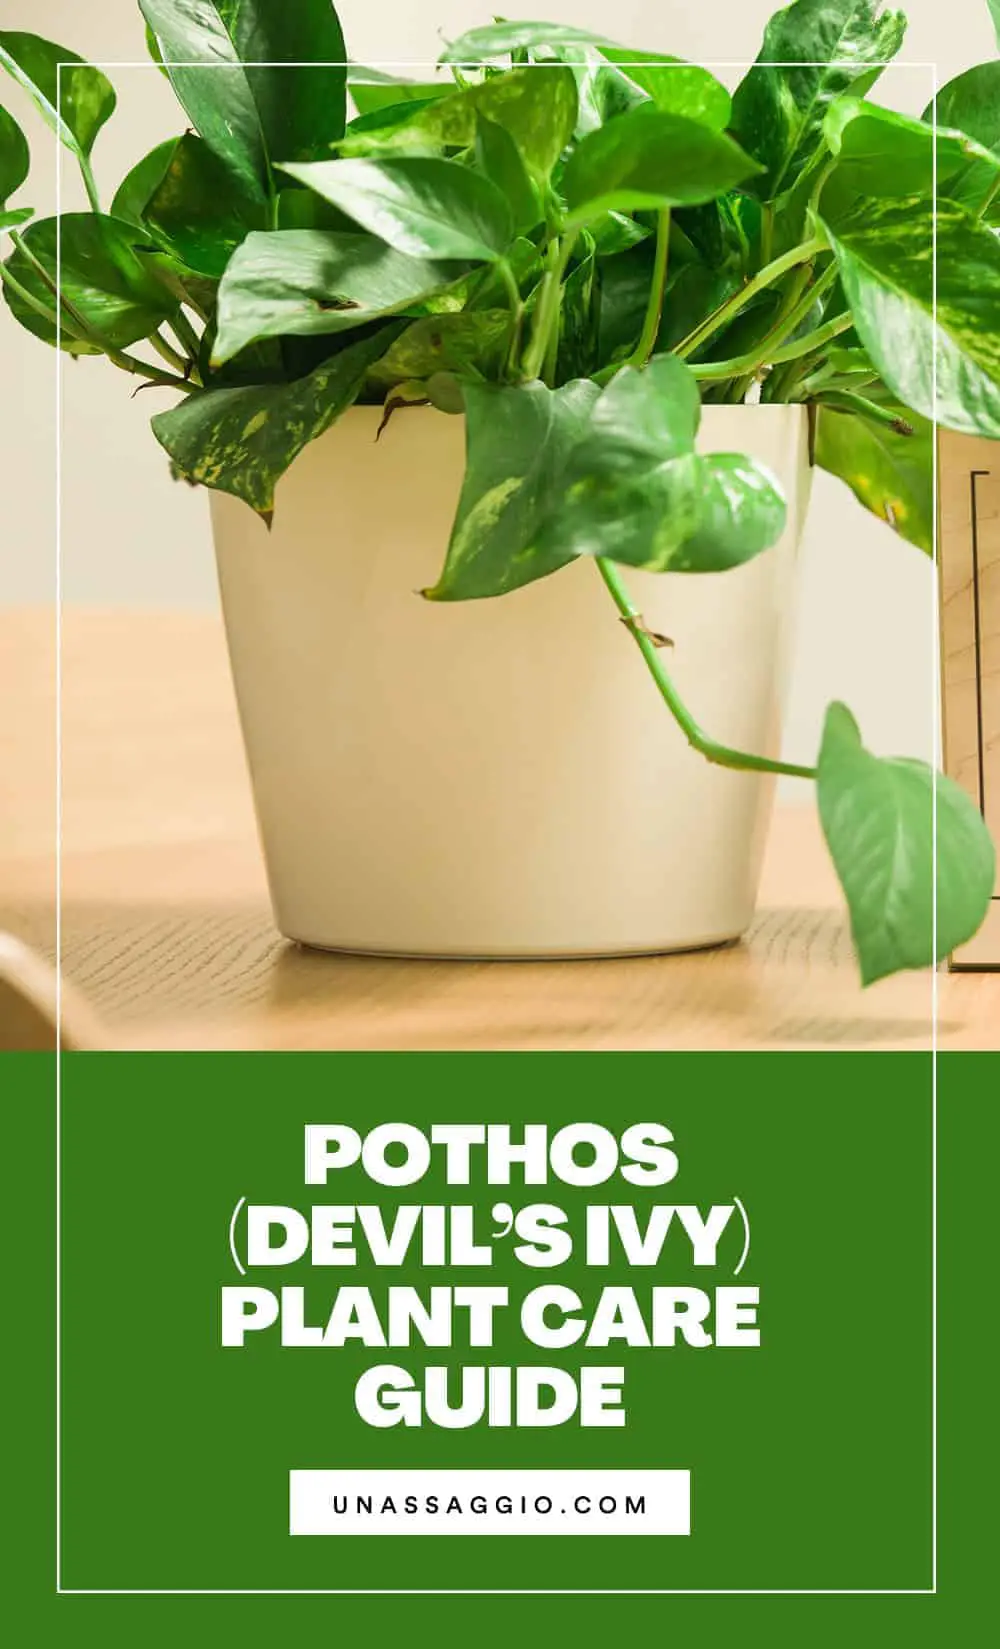 Pothos plant care guide